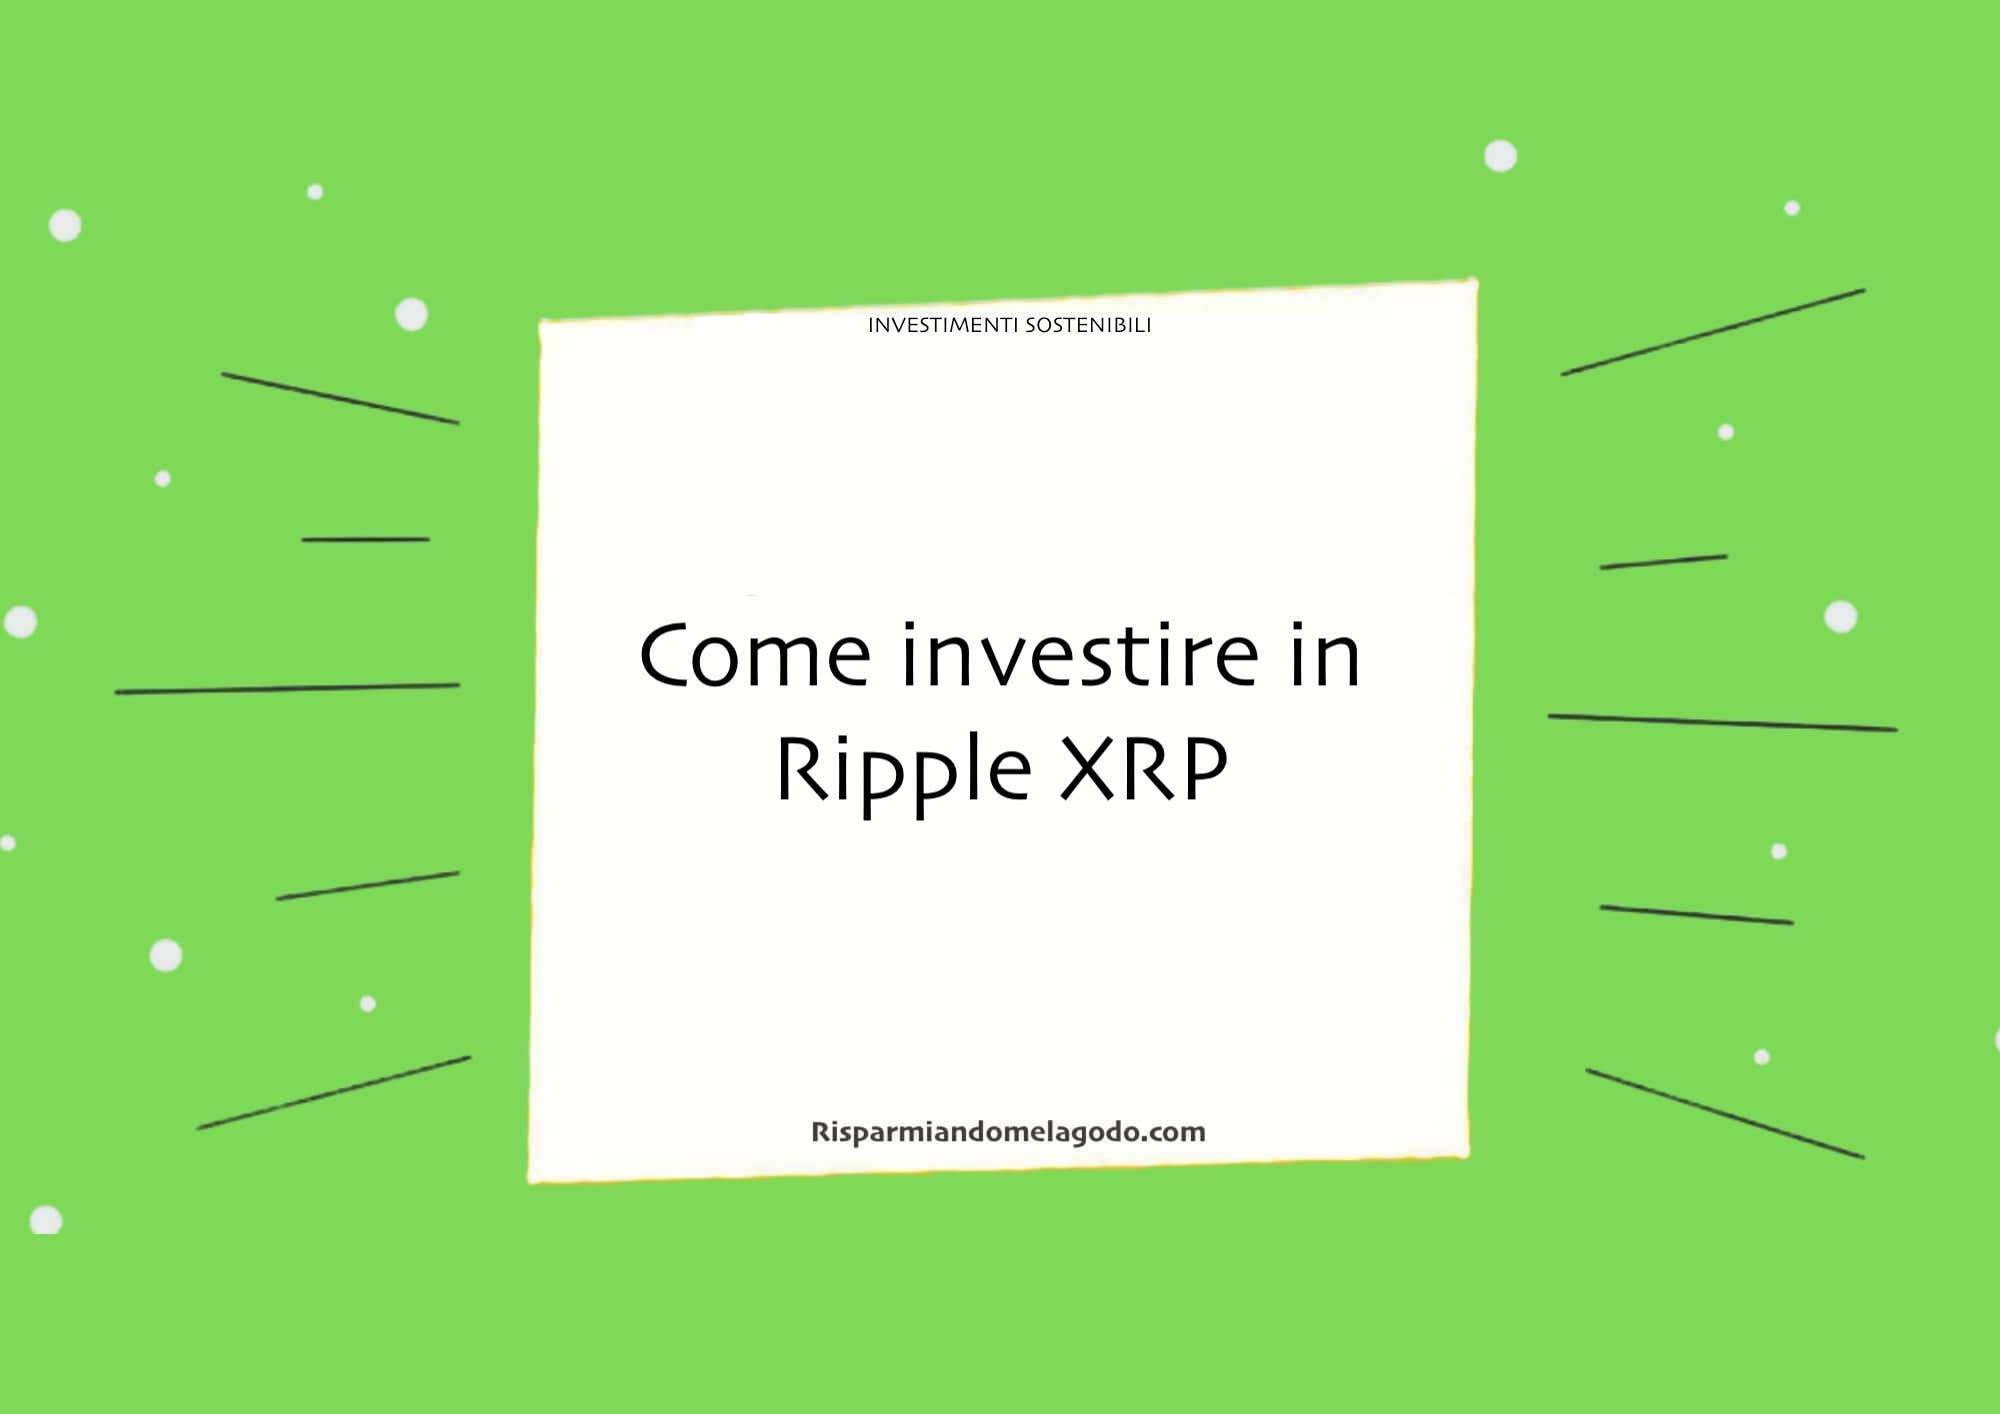 Come investire in Ripple XRP